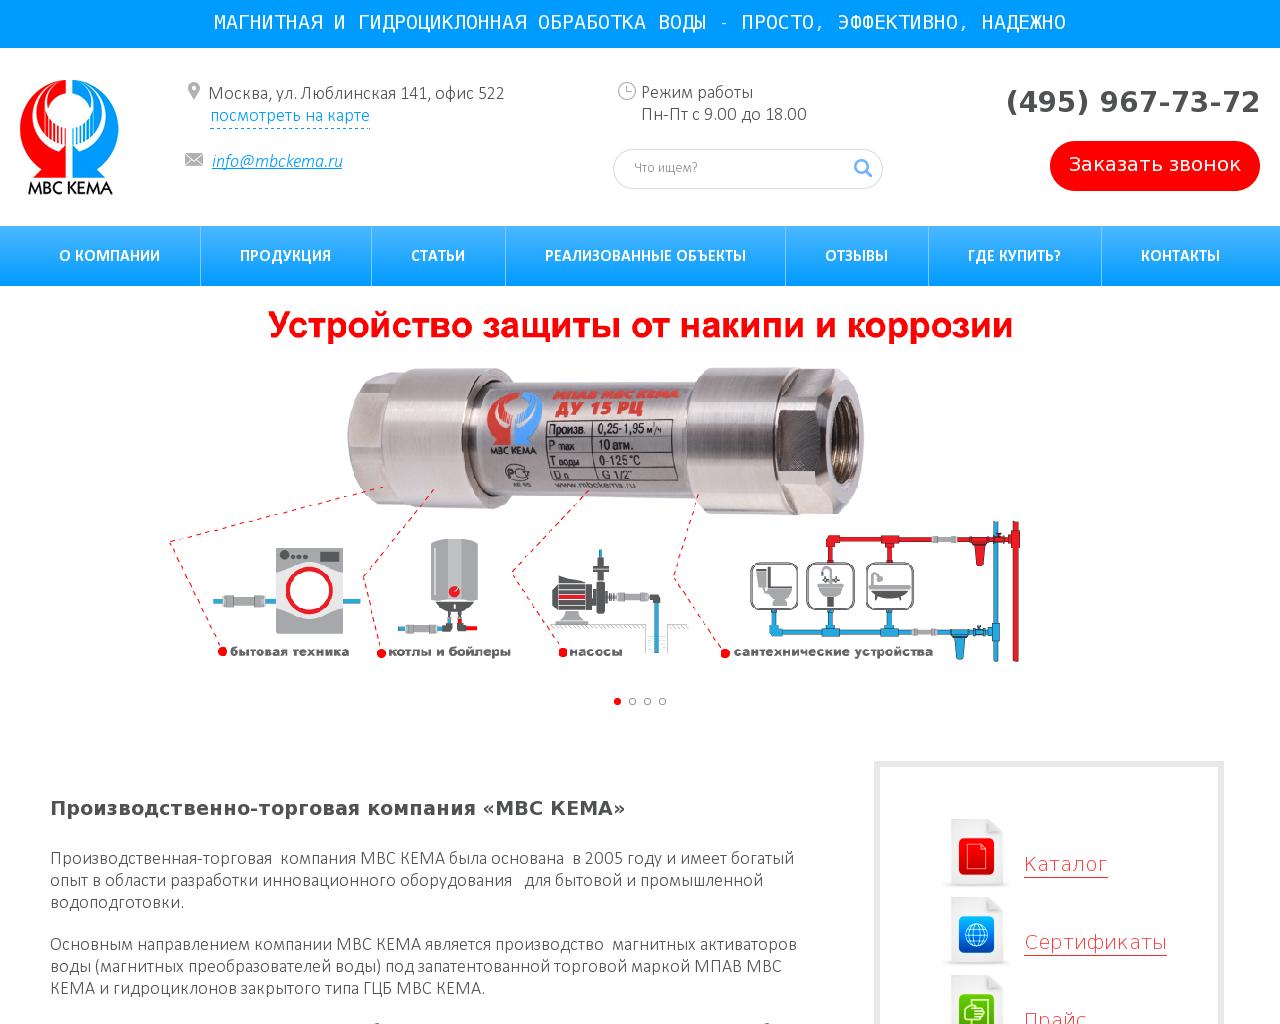 Изображение сайта mbckema.ru в разрешении 1280x1024